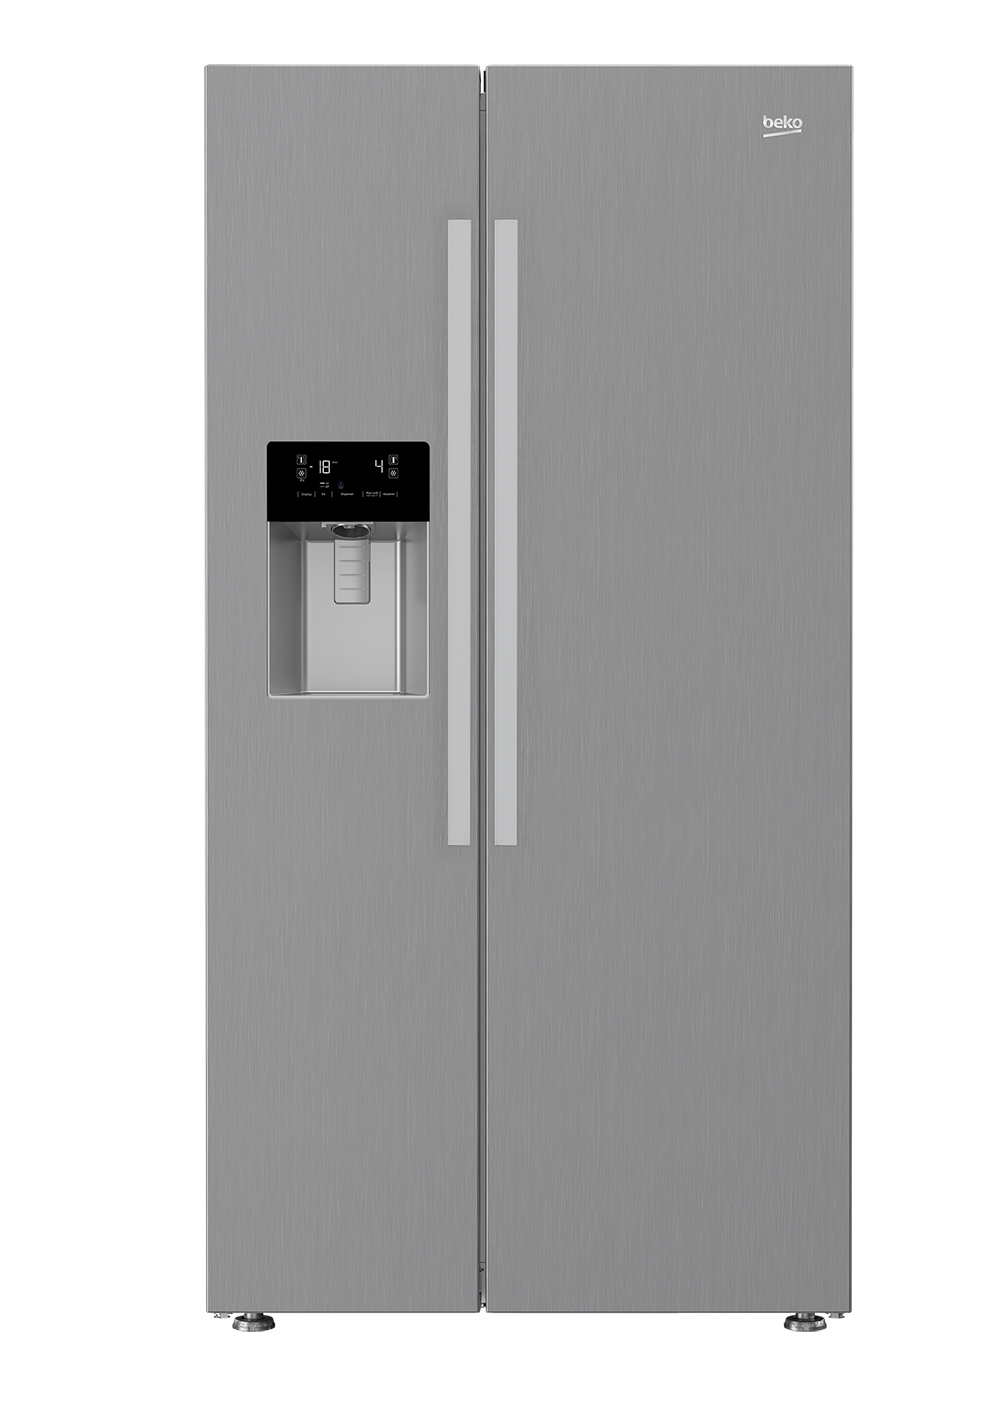 Beko lanza su nuevo frigorífico americano con tecnología Neofrost Dual Cooling